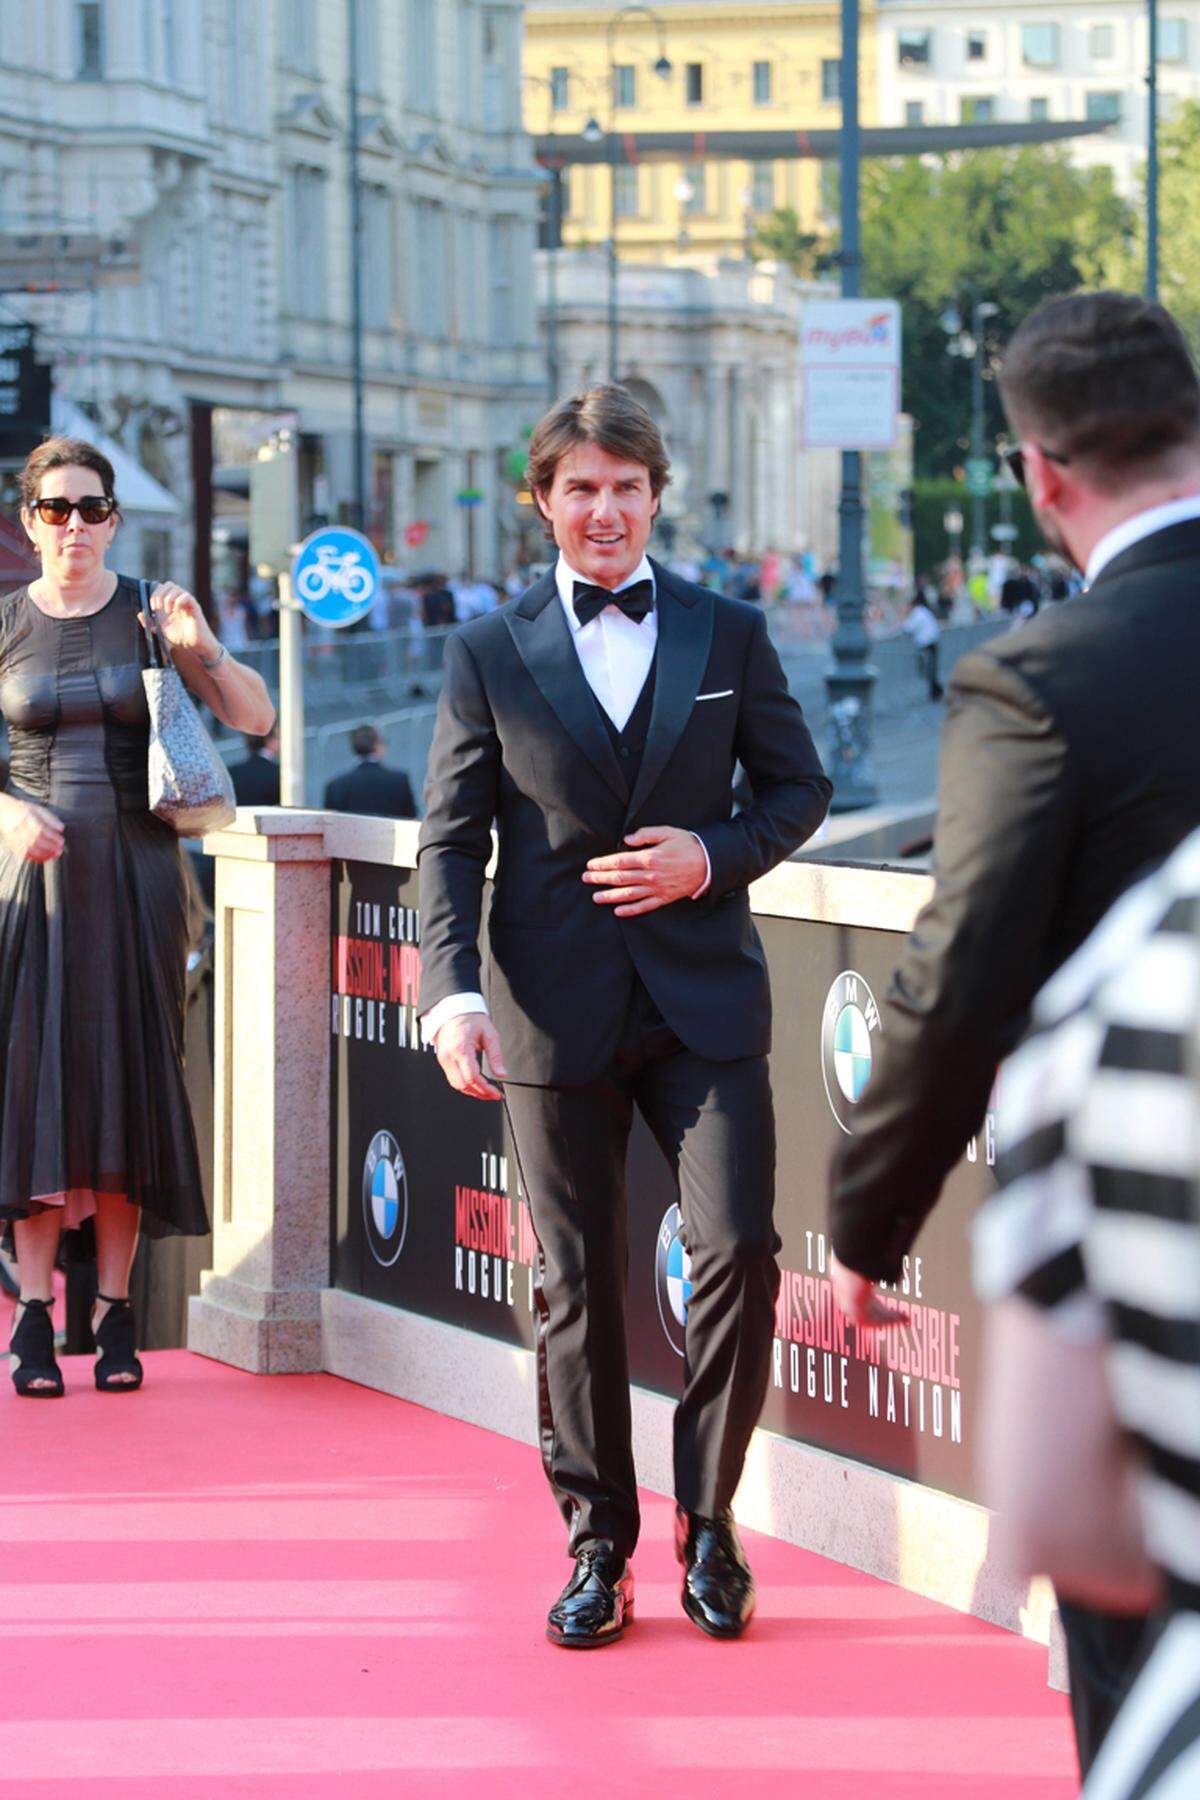 Zur Weltpremiere von Mission Impossible drehte sich in Wien zwei Tage lang alles um Tom Cruise. Zum Auftritt auf dem roten Teppich kam er ganz klassisch im Black-Tie-Aufzug von Giorgio Armani.